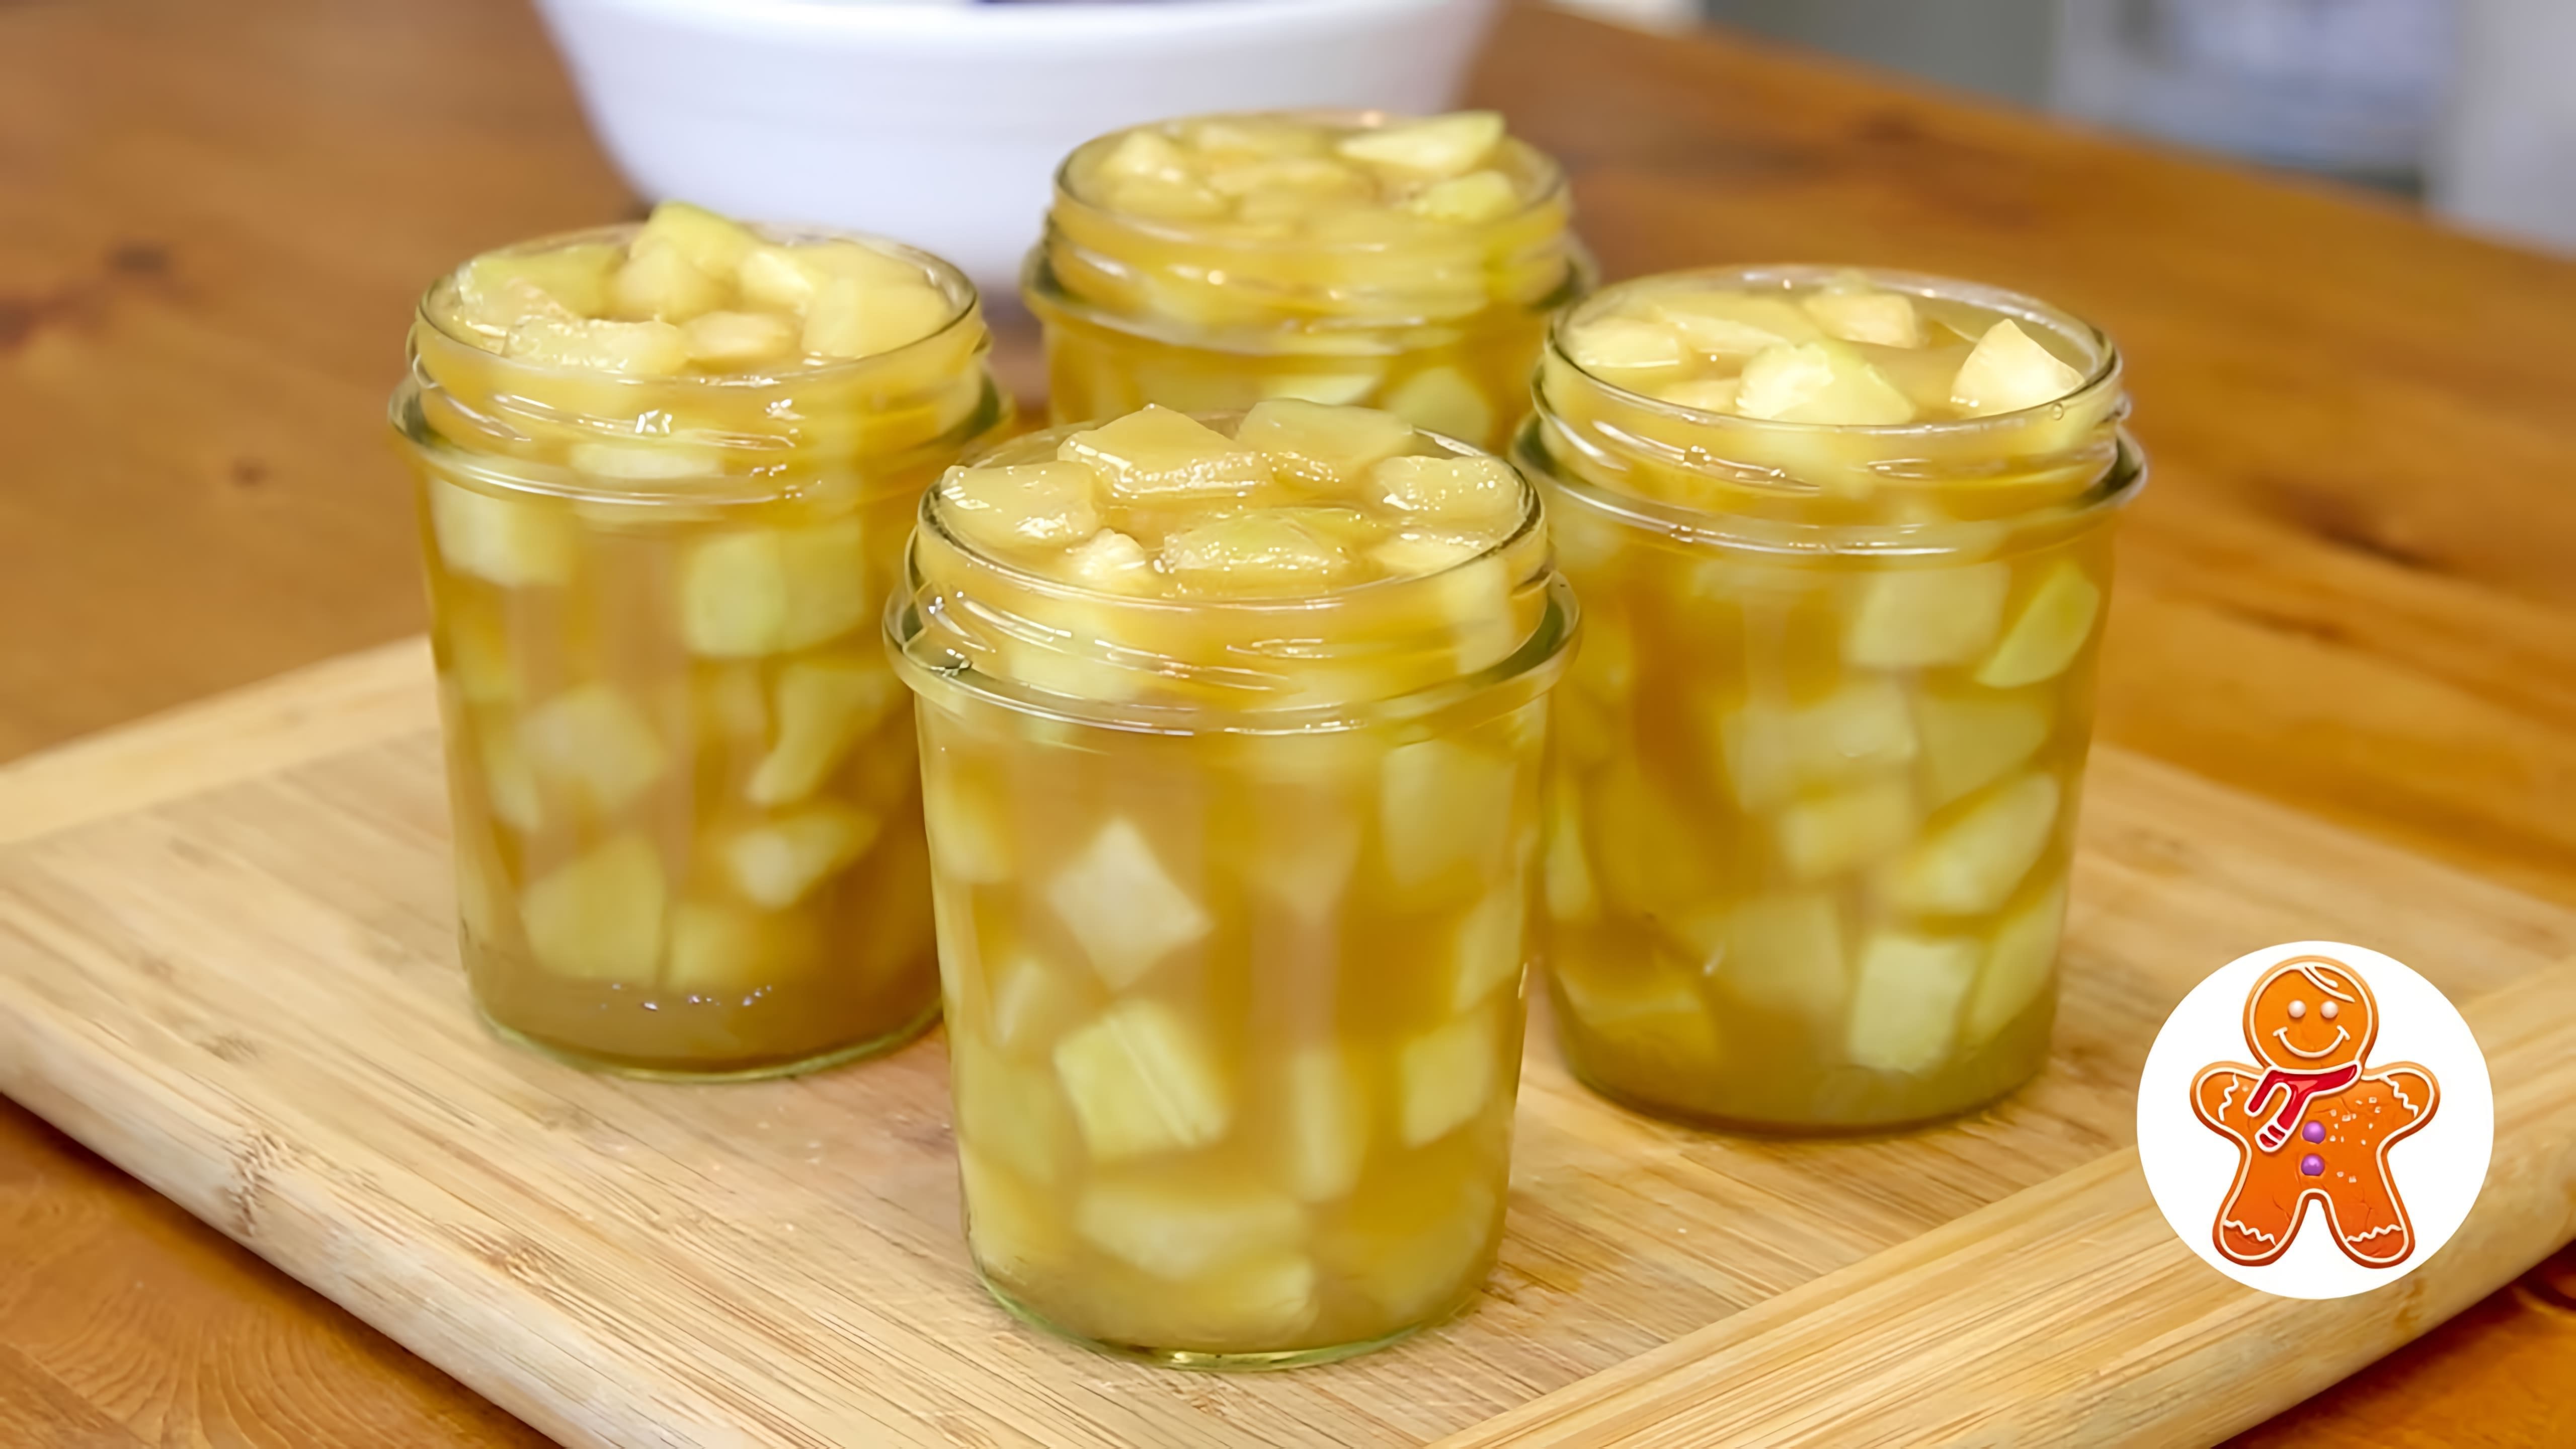 В этом видео демонстрируется процесс приготовления оригинальной заготовки из кабачков, которую автор называет "ананасы в сиропе"